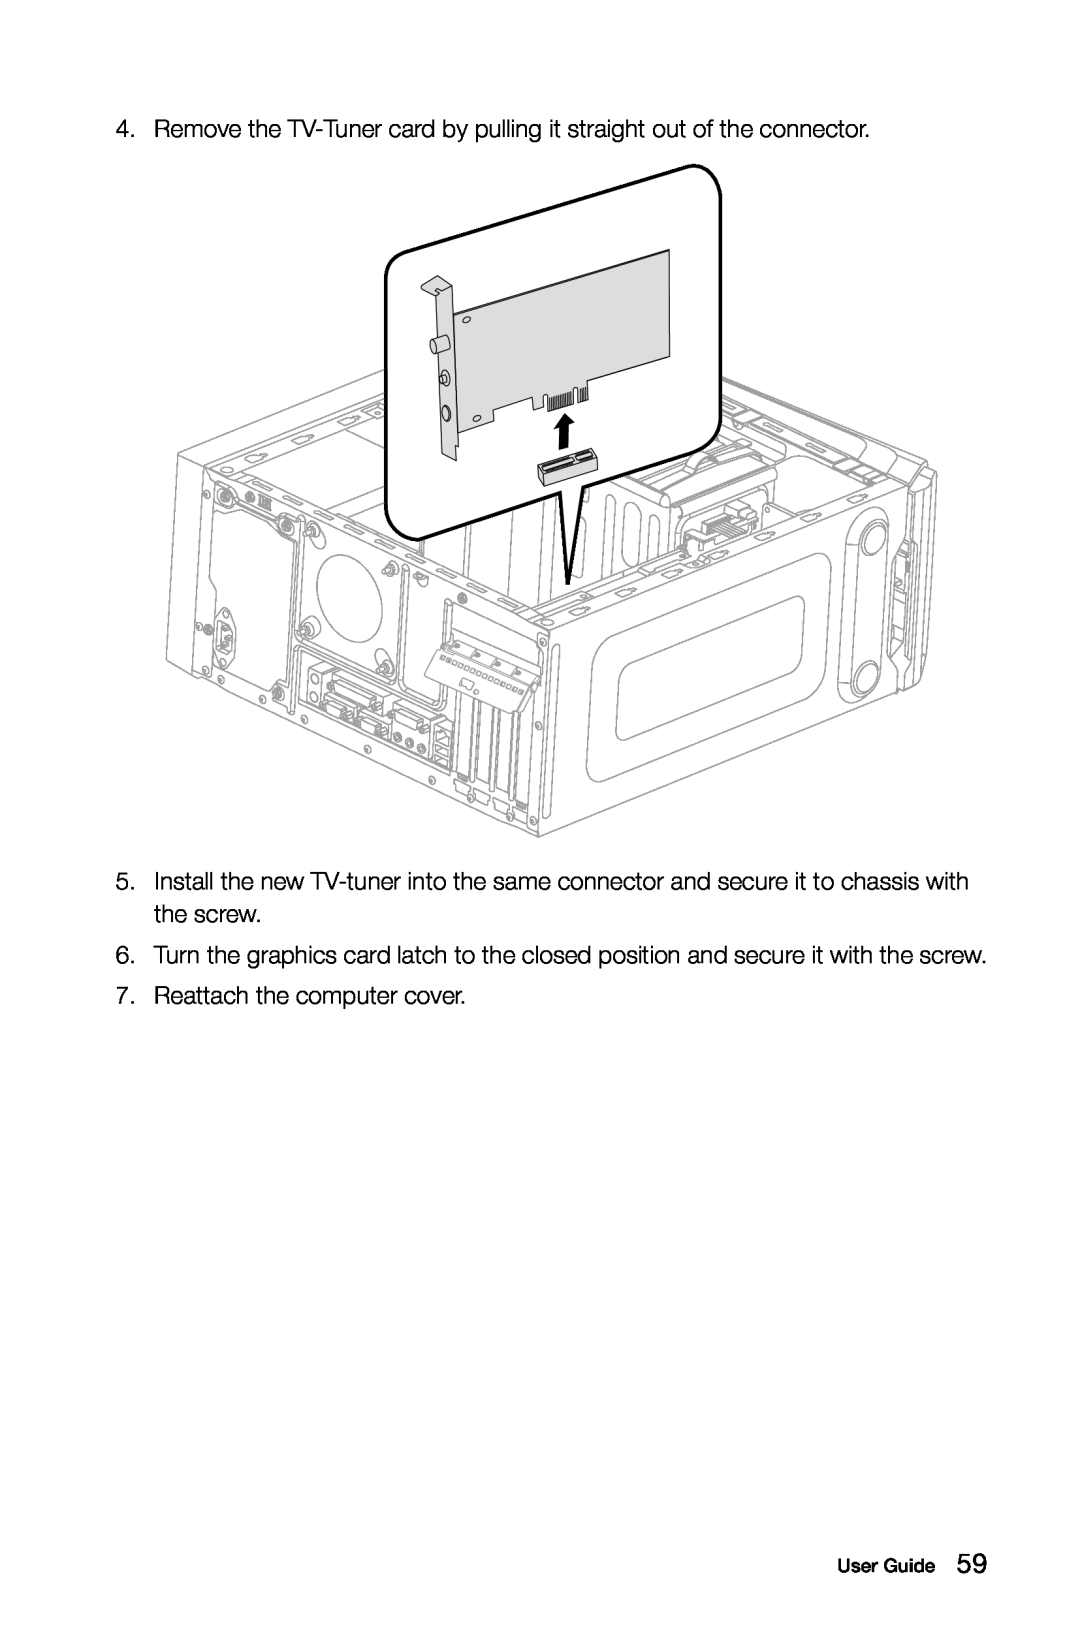 Lenovo 10090/2556/4748 [K415], 10121/90A1 [K450 ES], 10120/90A0 [K450 NON-ES] manual Reattach the computer cover 